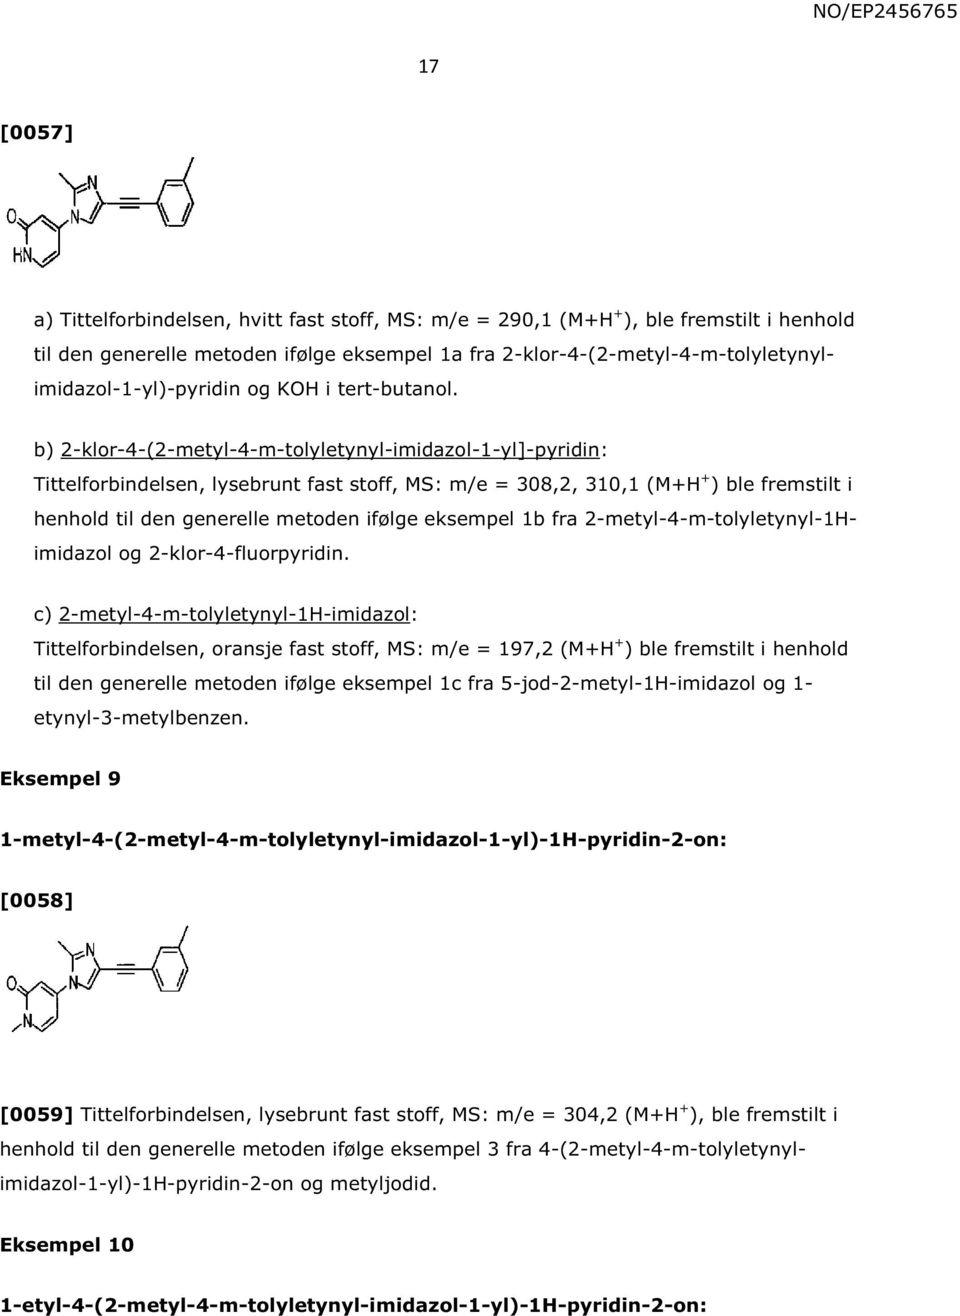 b) 2-klor-4-(2-metyl-4-m-tolyletynyl-imidazol-1-yl]-pyridin: Tittelforbindelsen, lysebrunt fast stoff, MS: m/e = 308,2, 310,1 (M+H + ) ble fremstilt i henhold til den generelle metoden ifølge